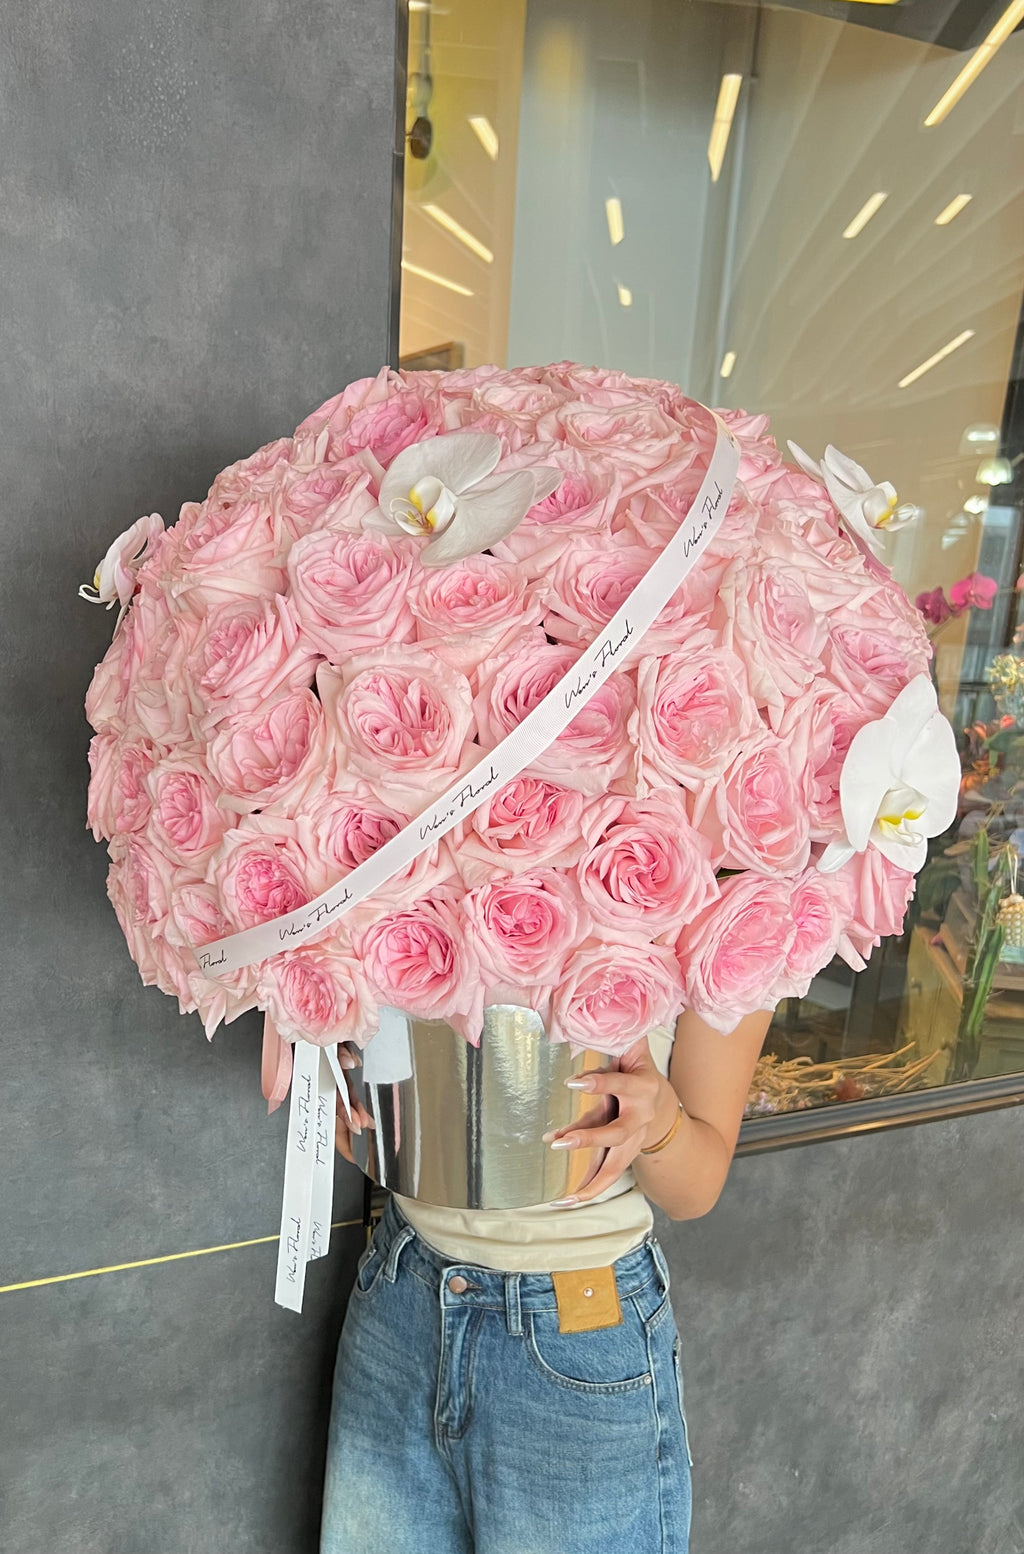 Grand 111 roses bloom box- Premium Pink O’hara roses